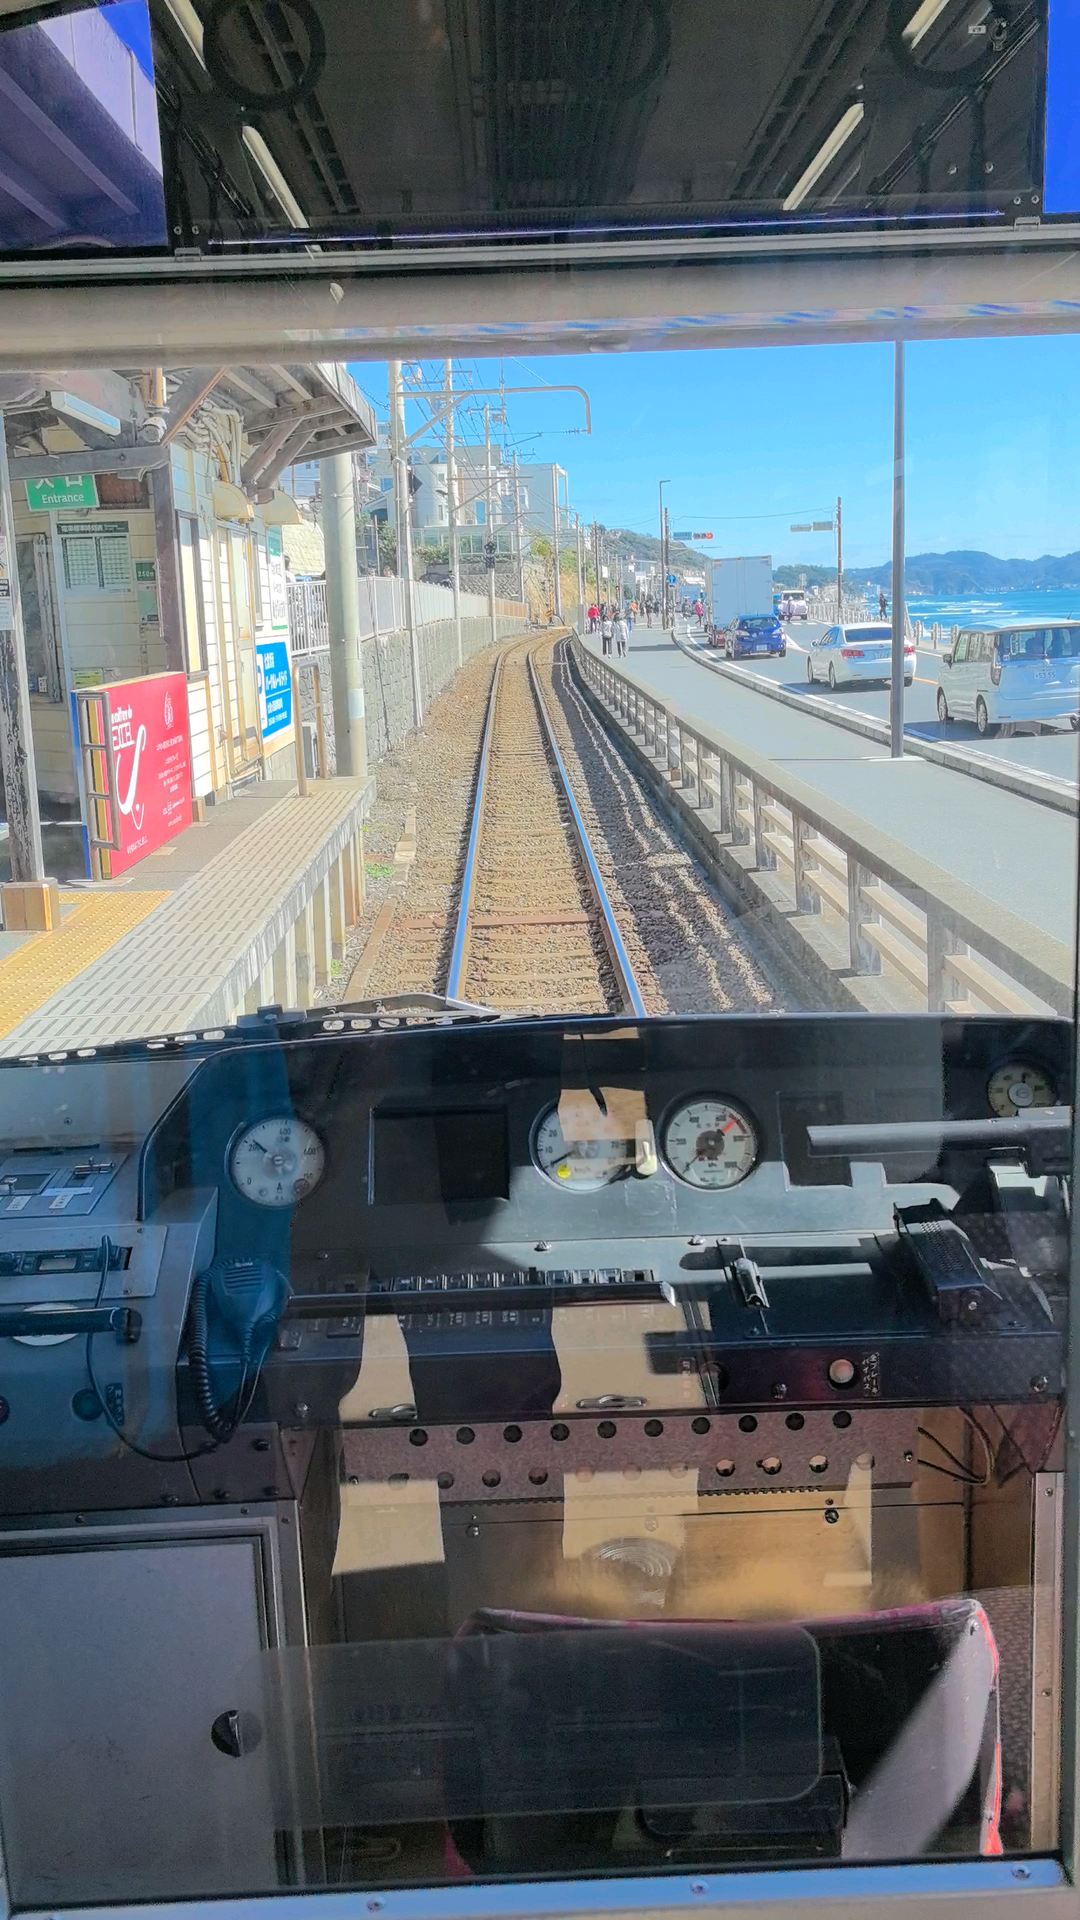 在镰仓小火车上面看着海景还是挺不错的，来这里的游客这时候还是挺多的，这里拍摄镰仓高校前网红照片路口有